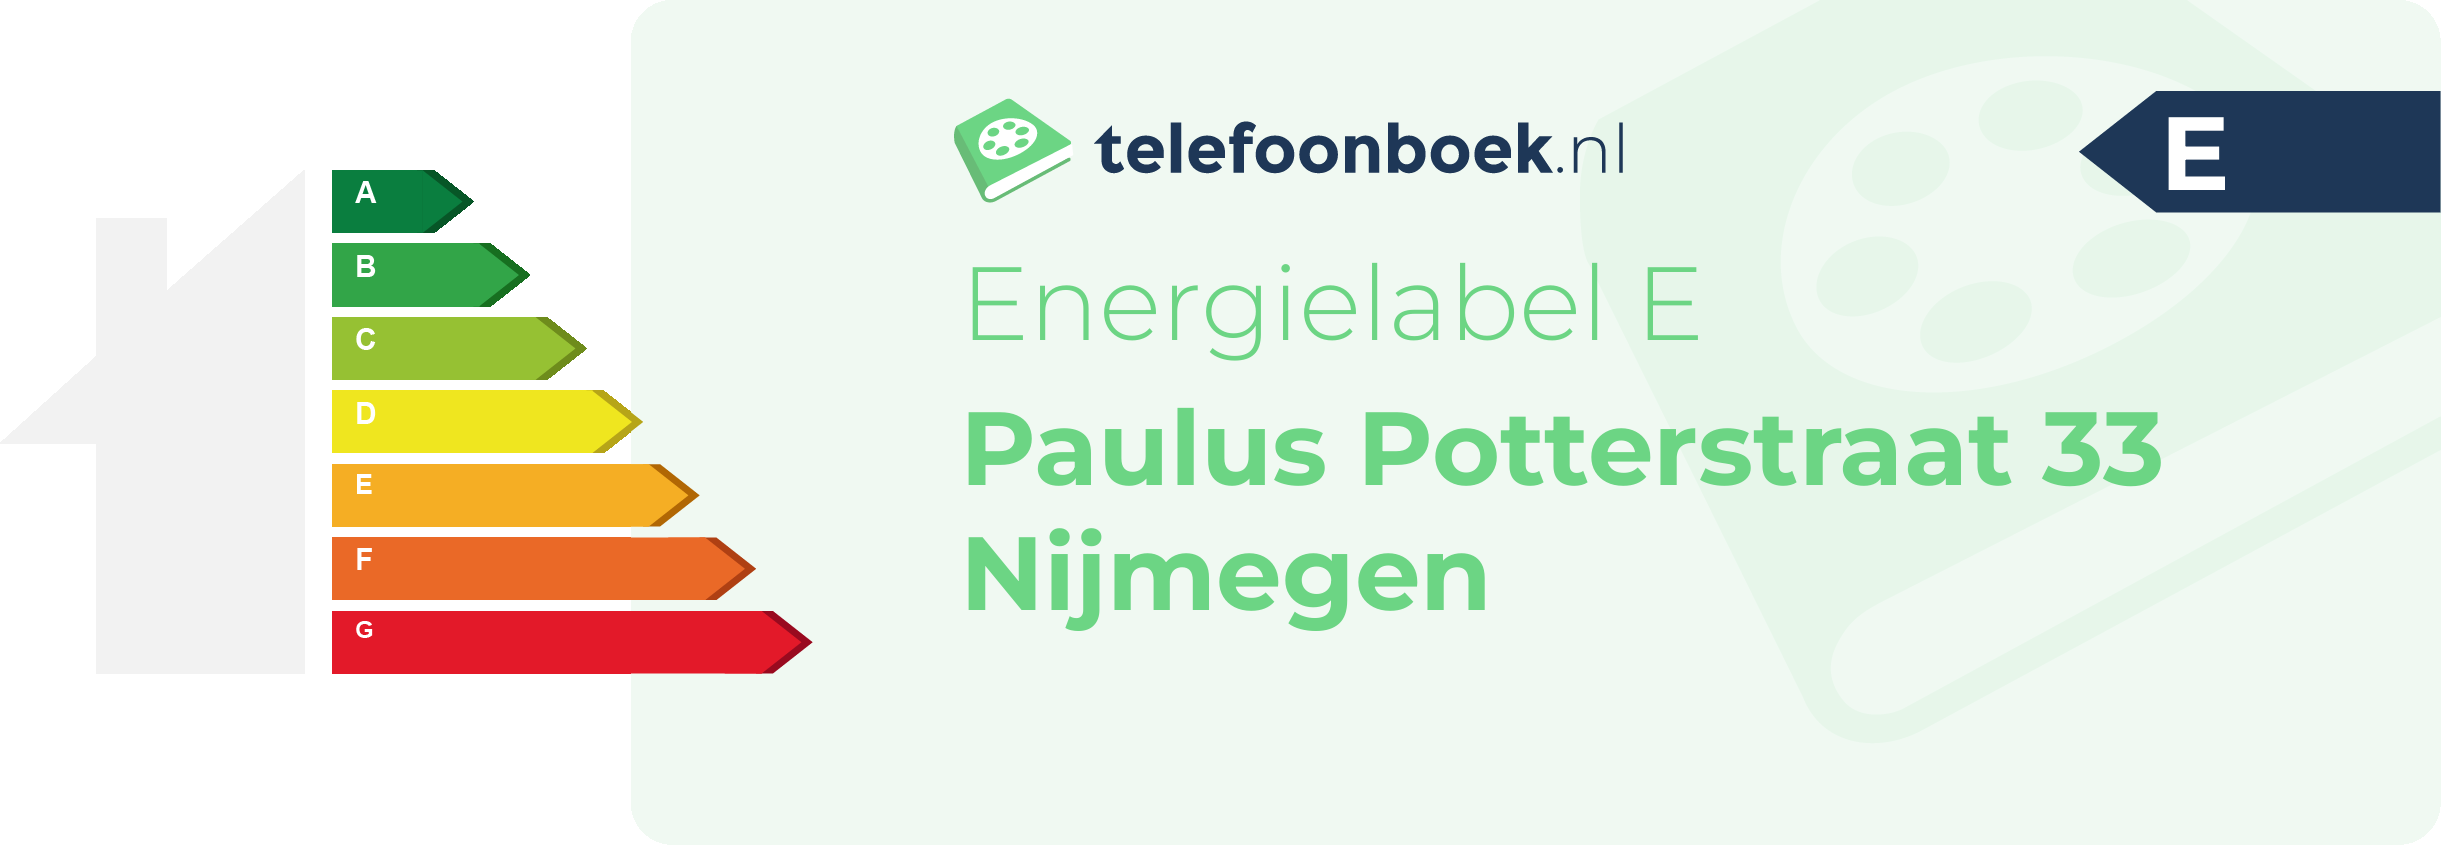 Energielabel Paulus Potterstraat 33 Nijmegen